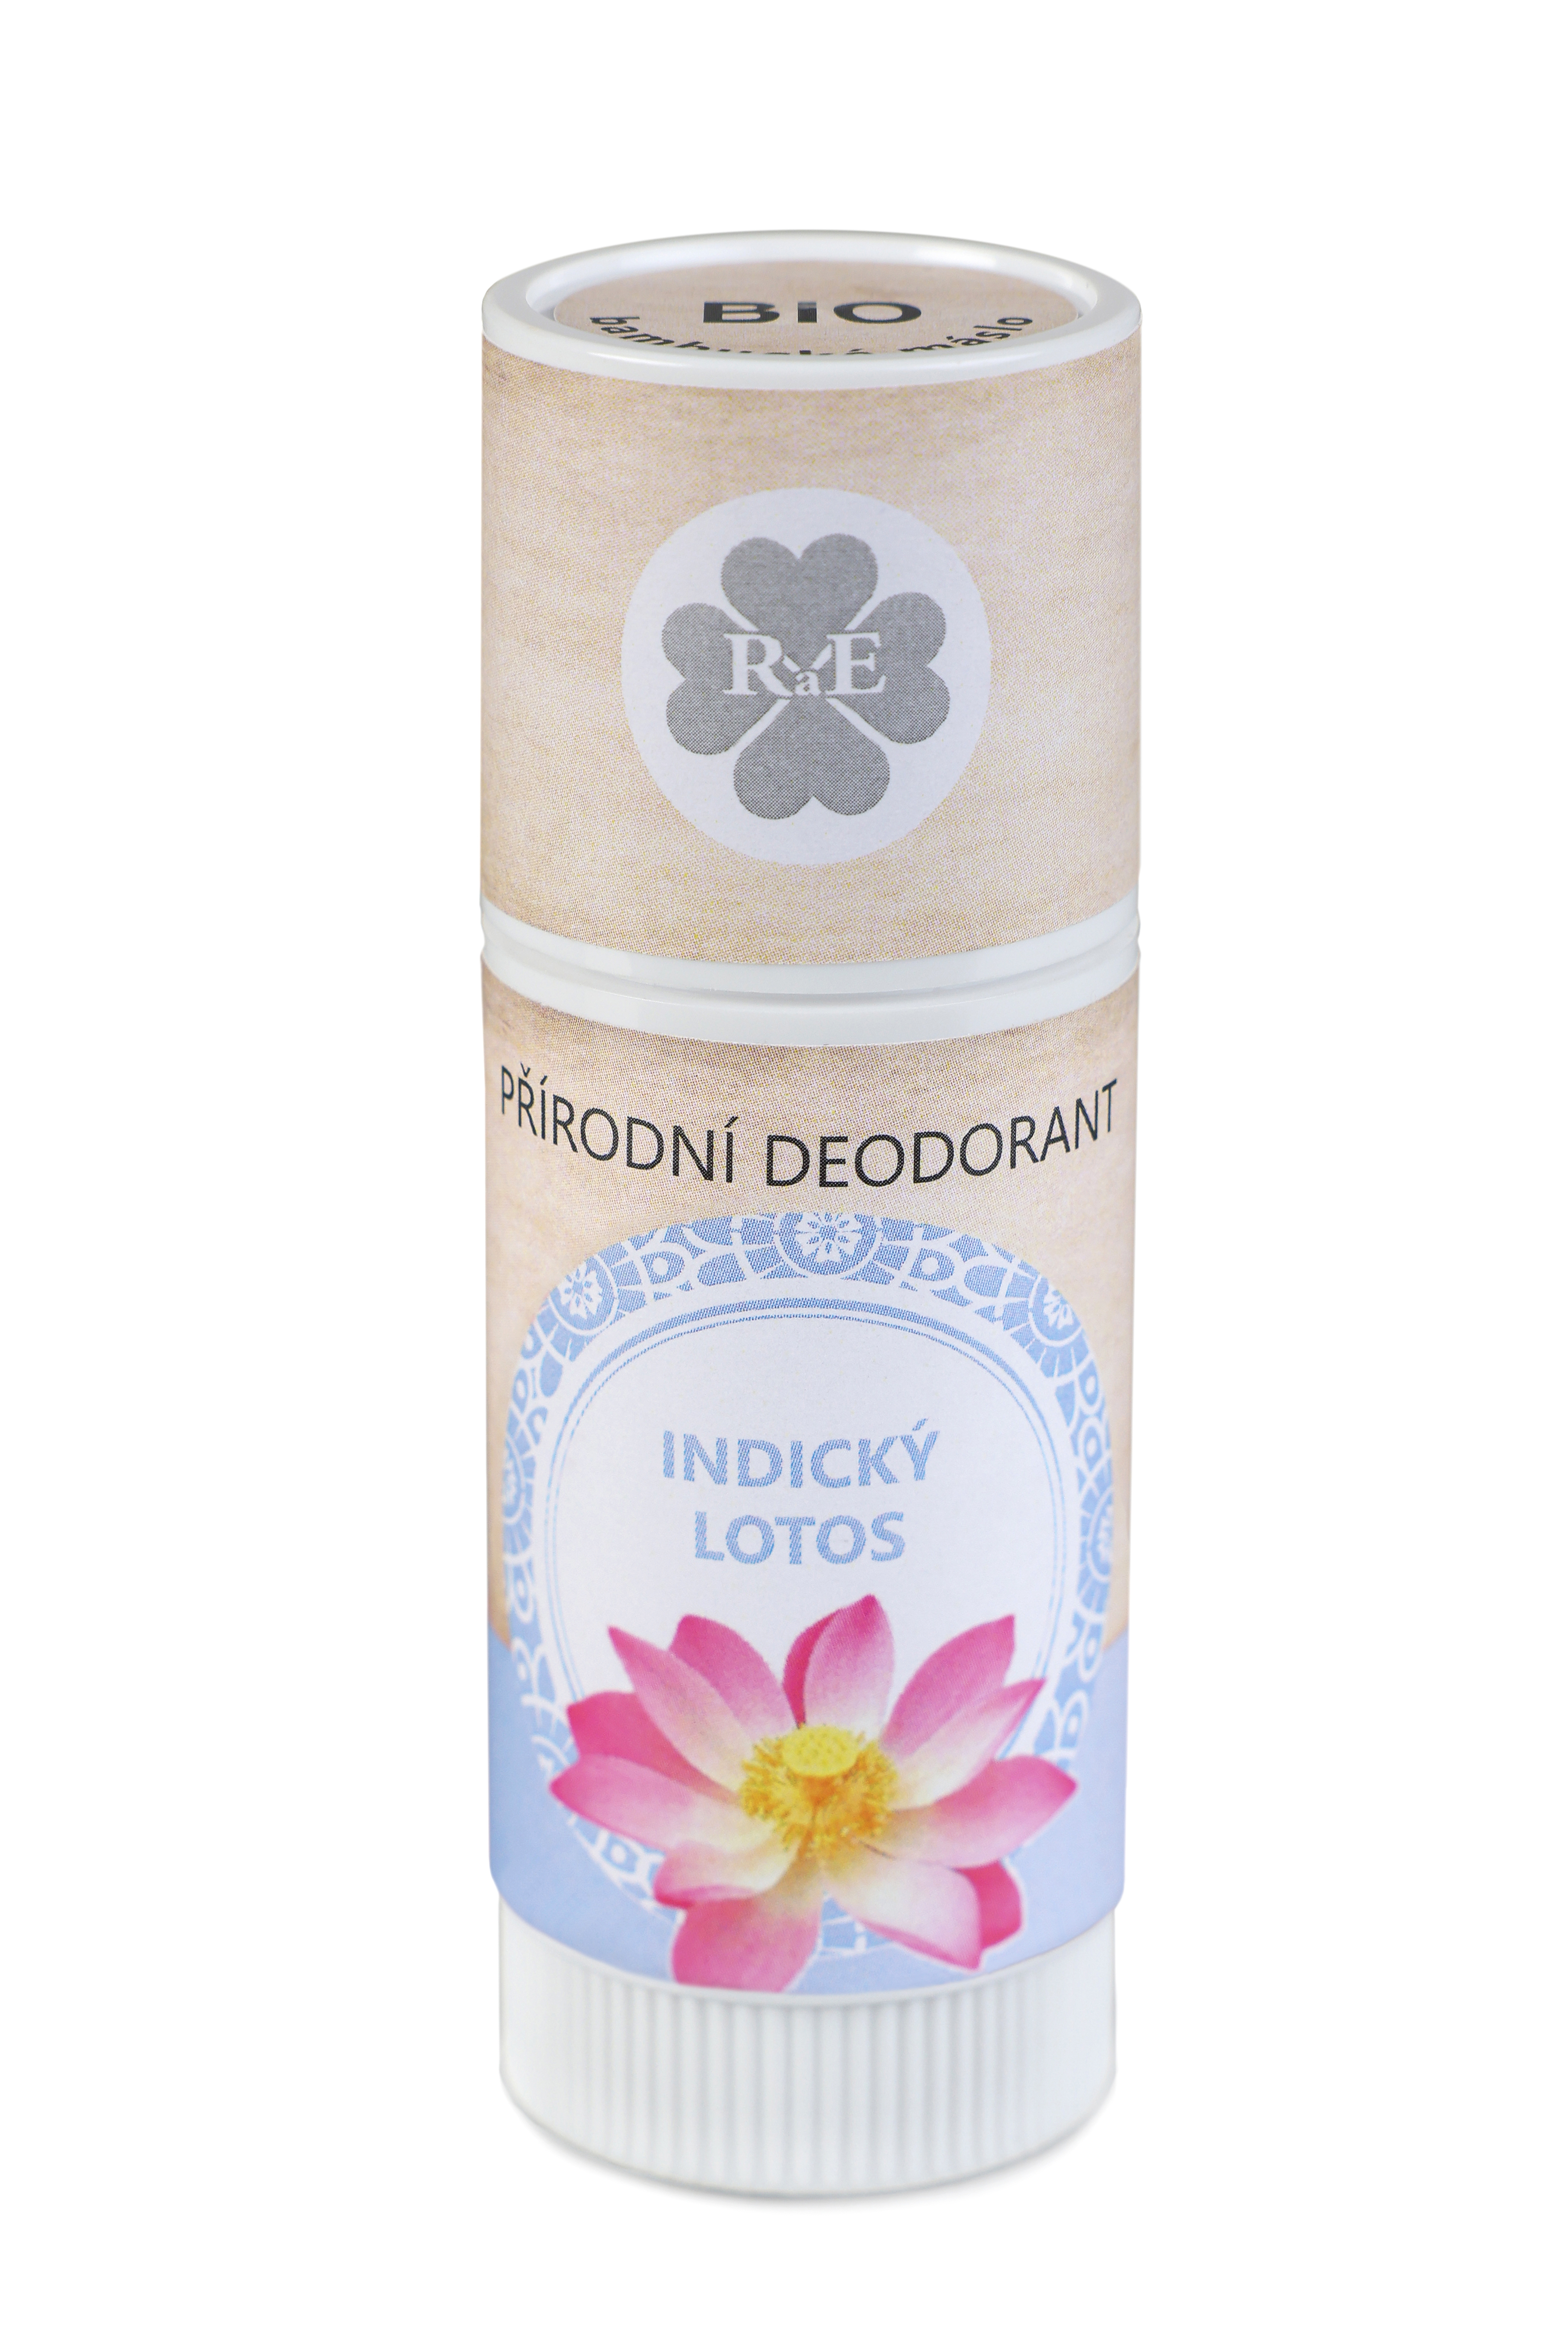 RaE Přírodní deodorant Indický lotos tuba 25ml